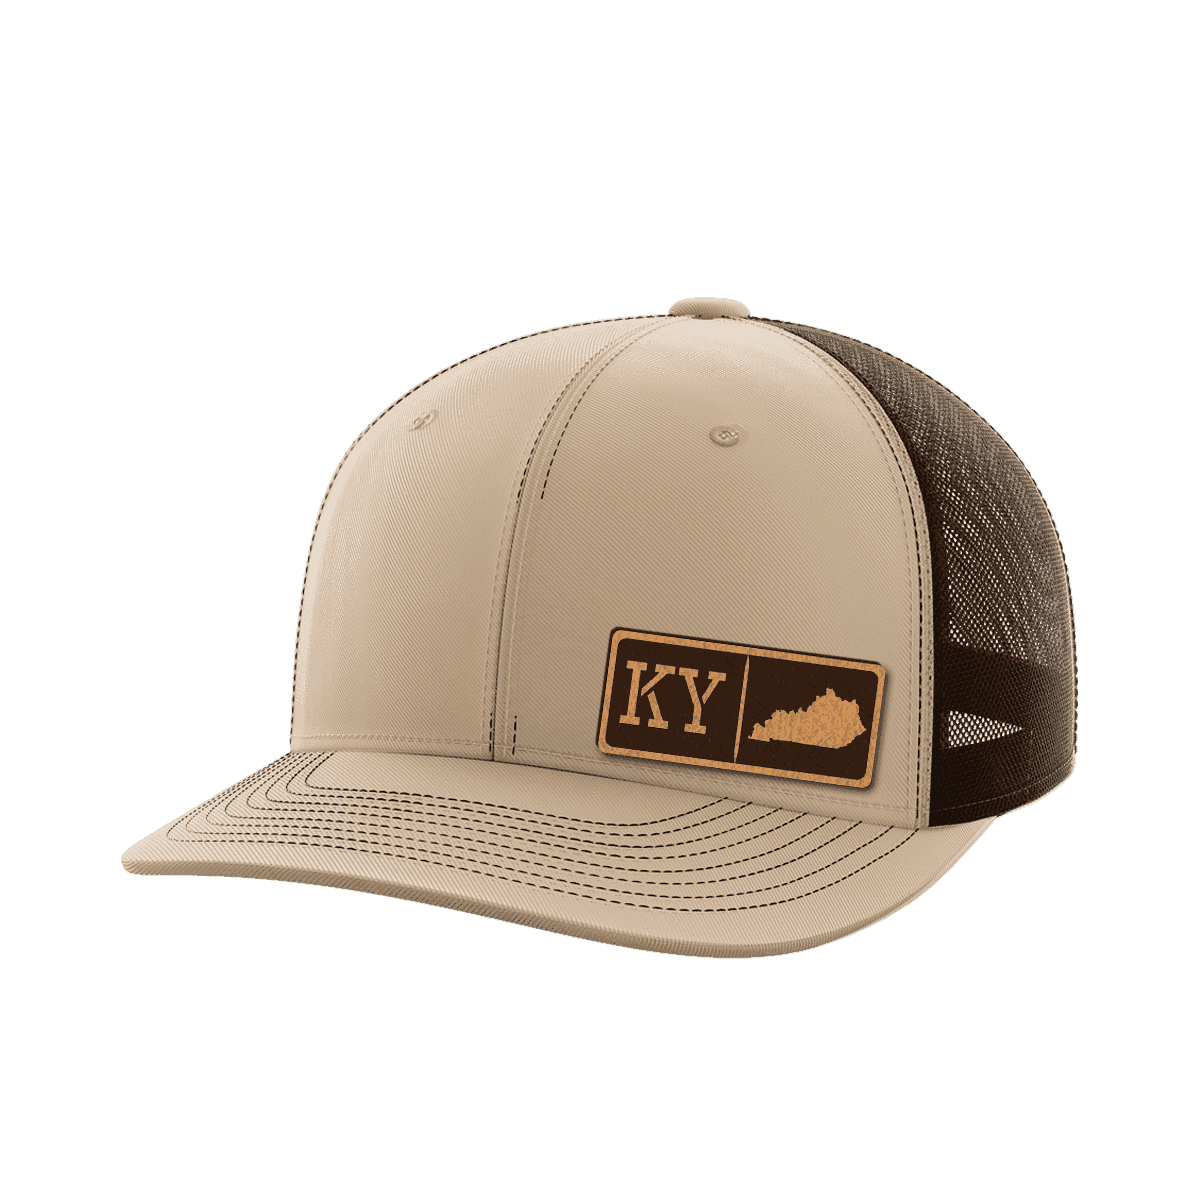 Kentucky Homegrown Hats - Greater Half